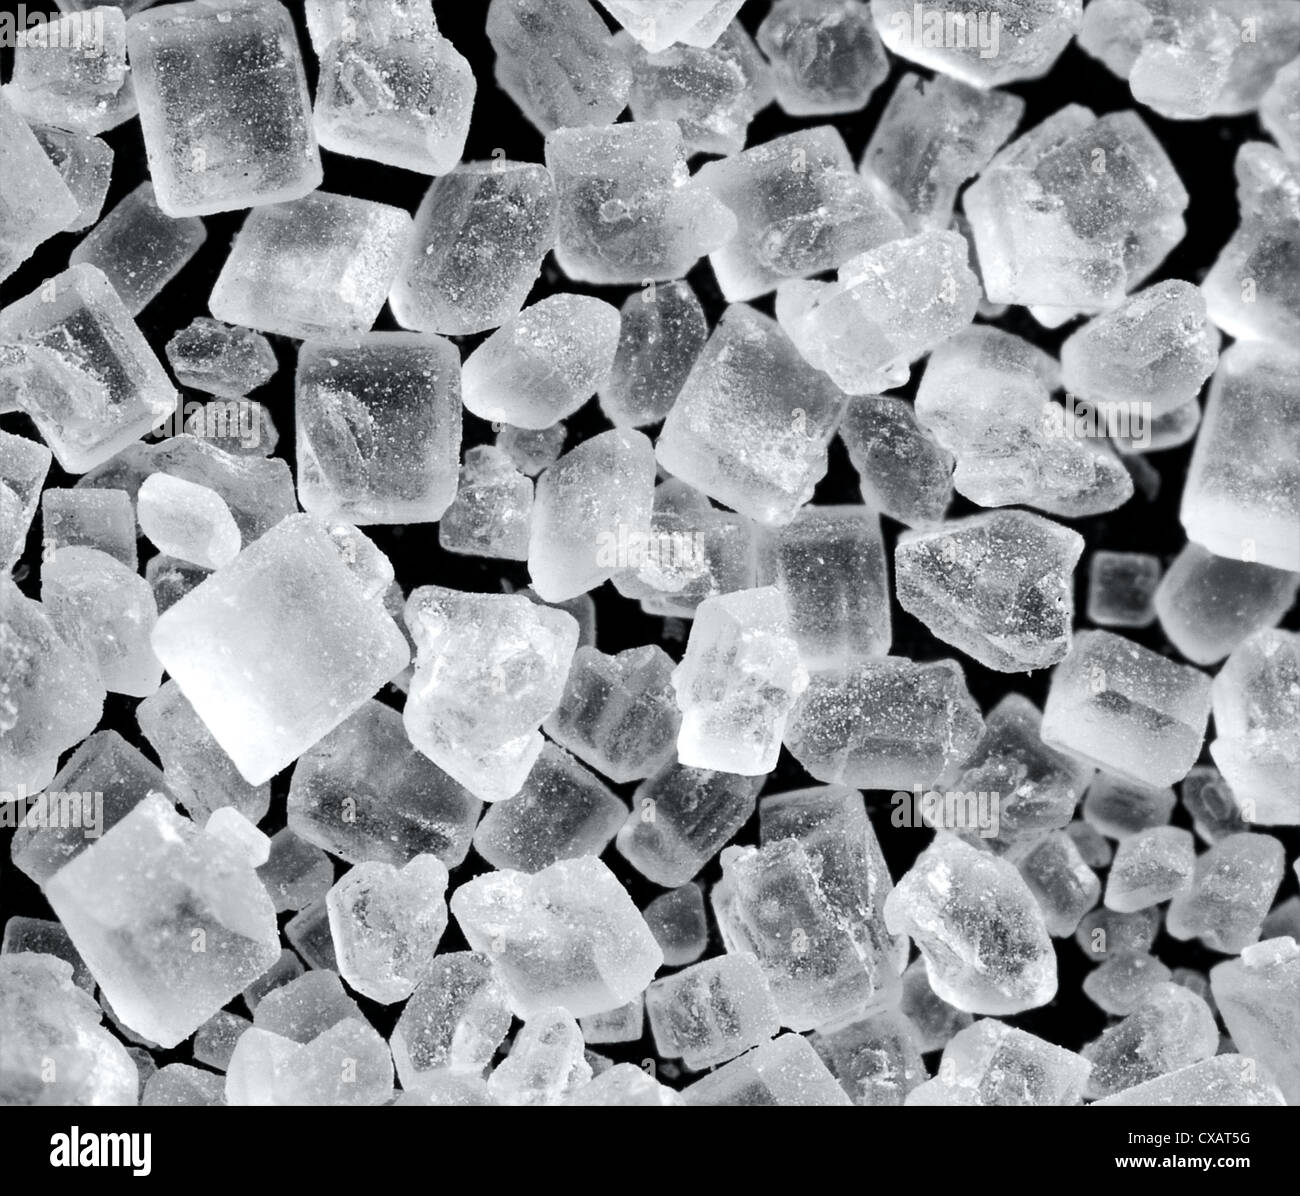 a closeup shot of sugar crystals Stock Photo